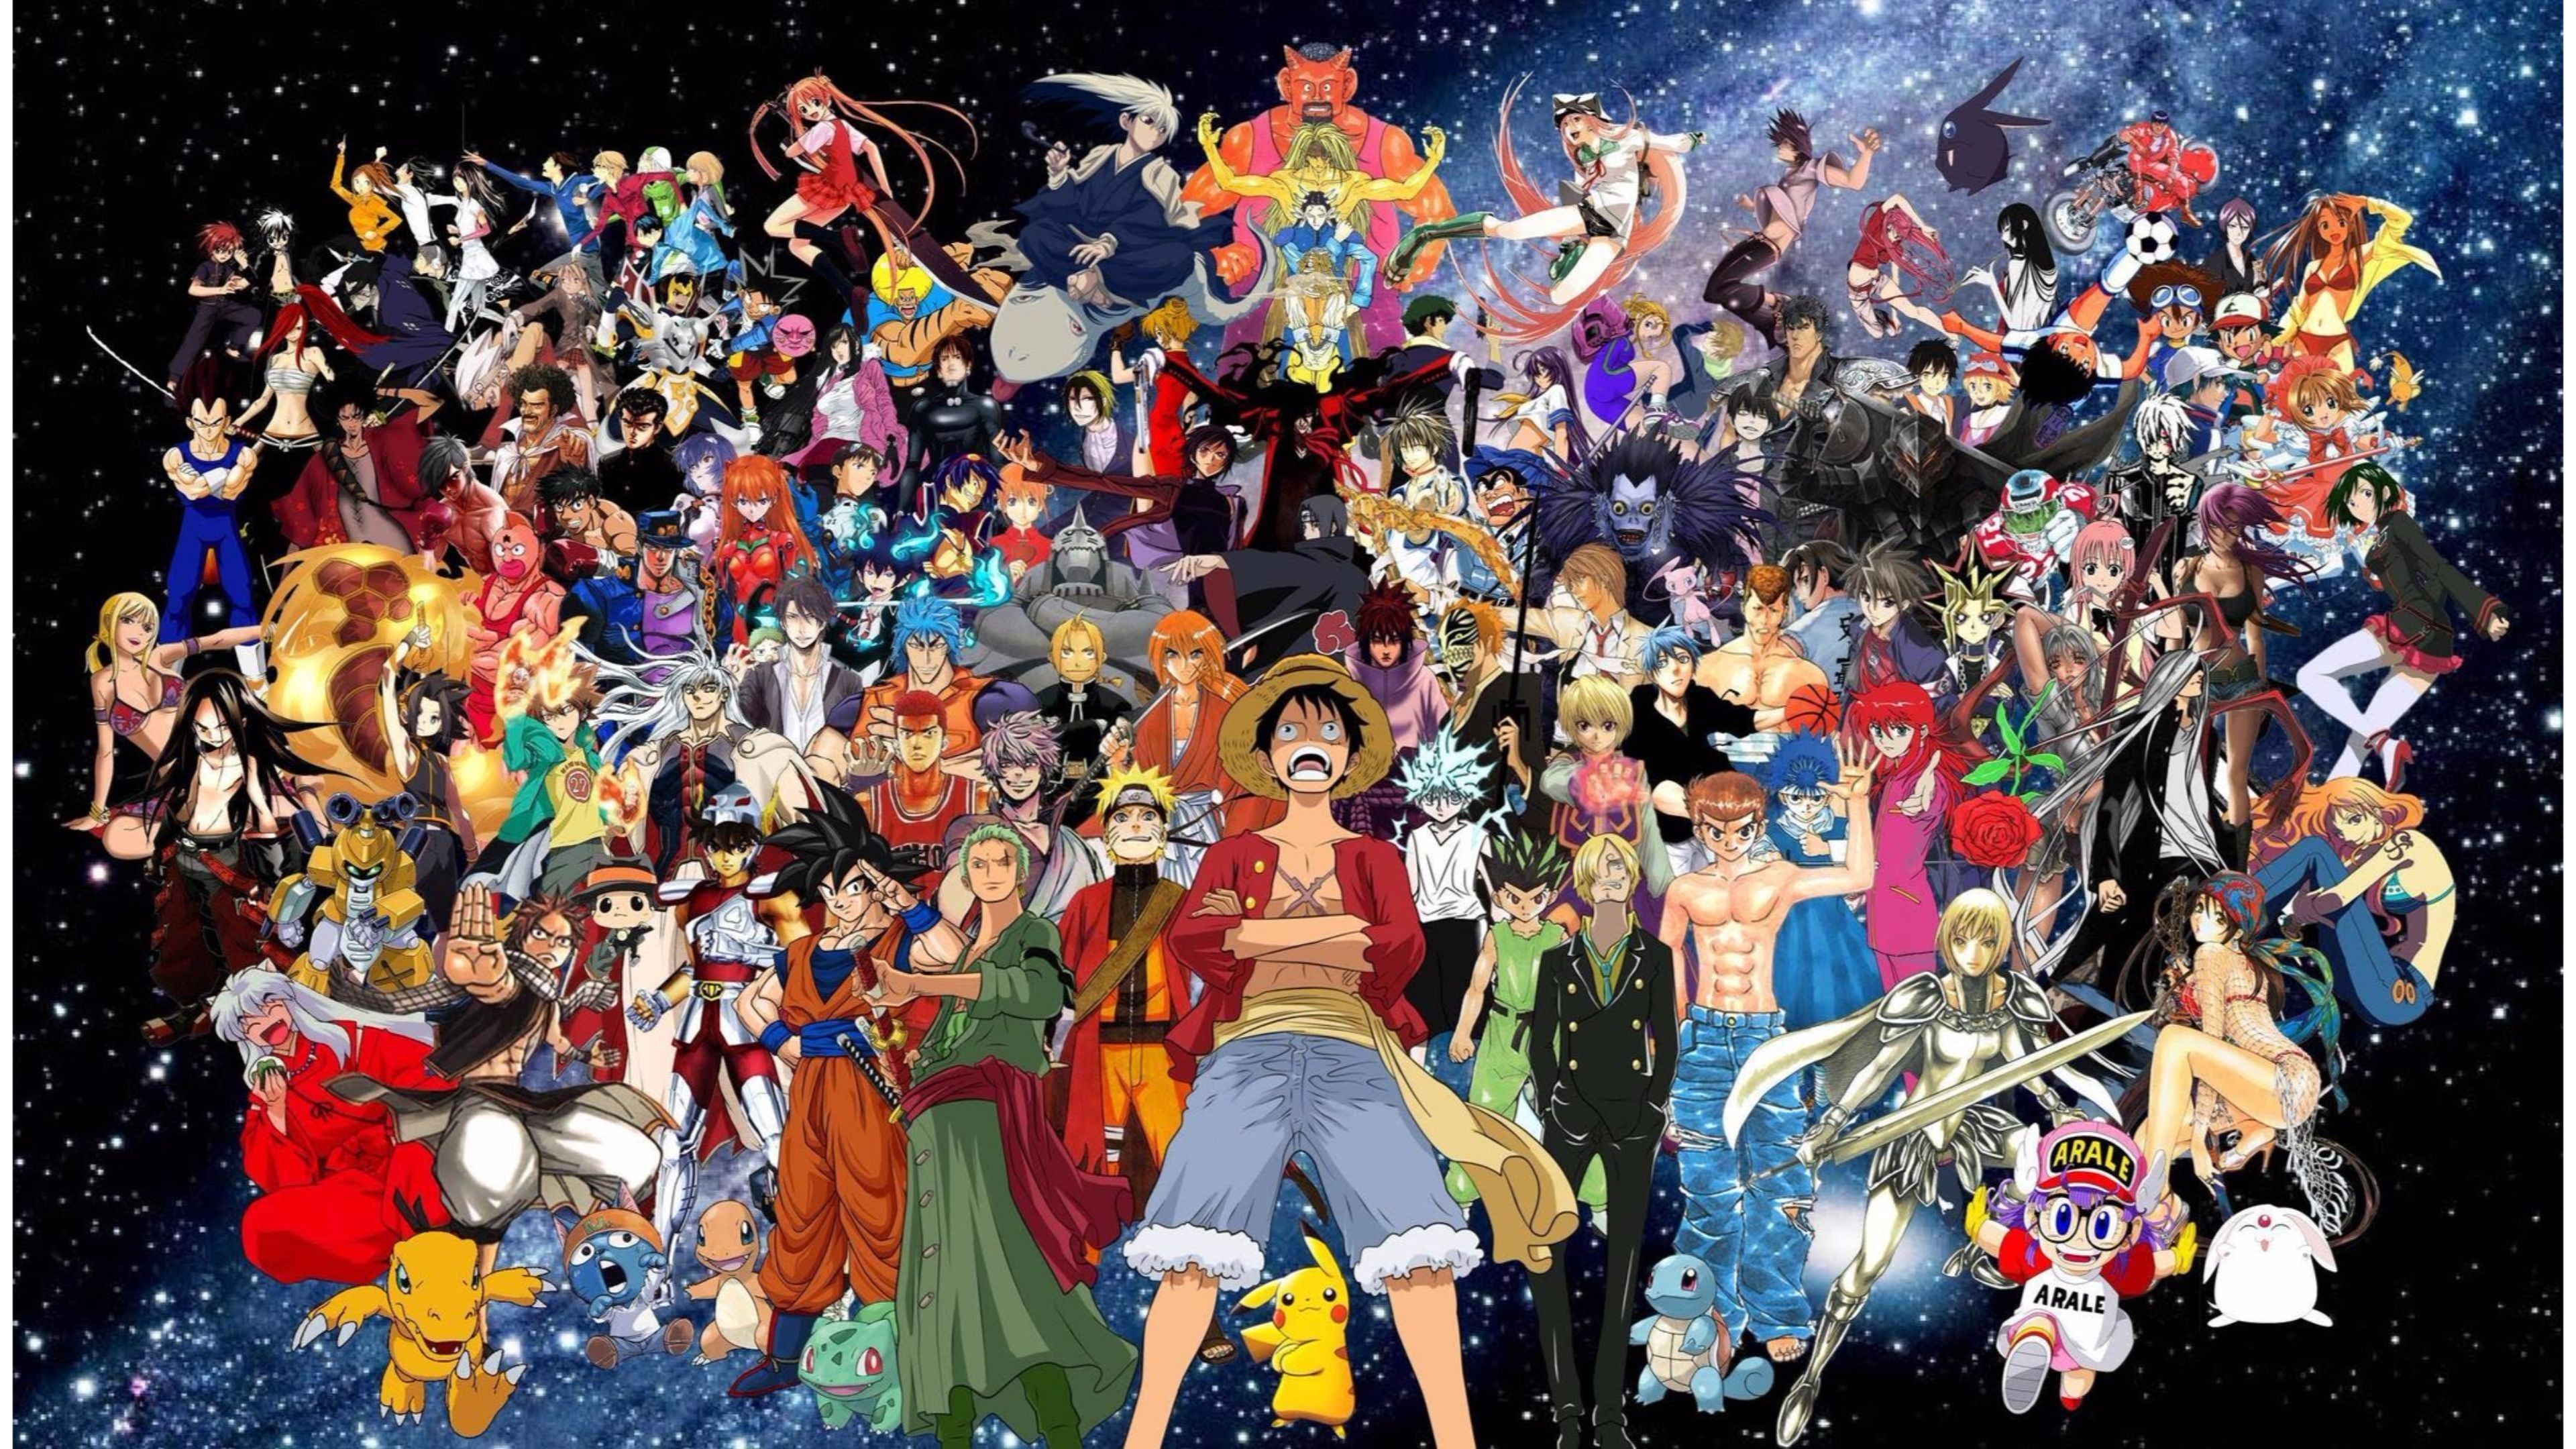 4K Anime wallpaperDownload free full HD wallpaper for desktop